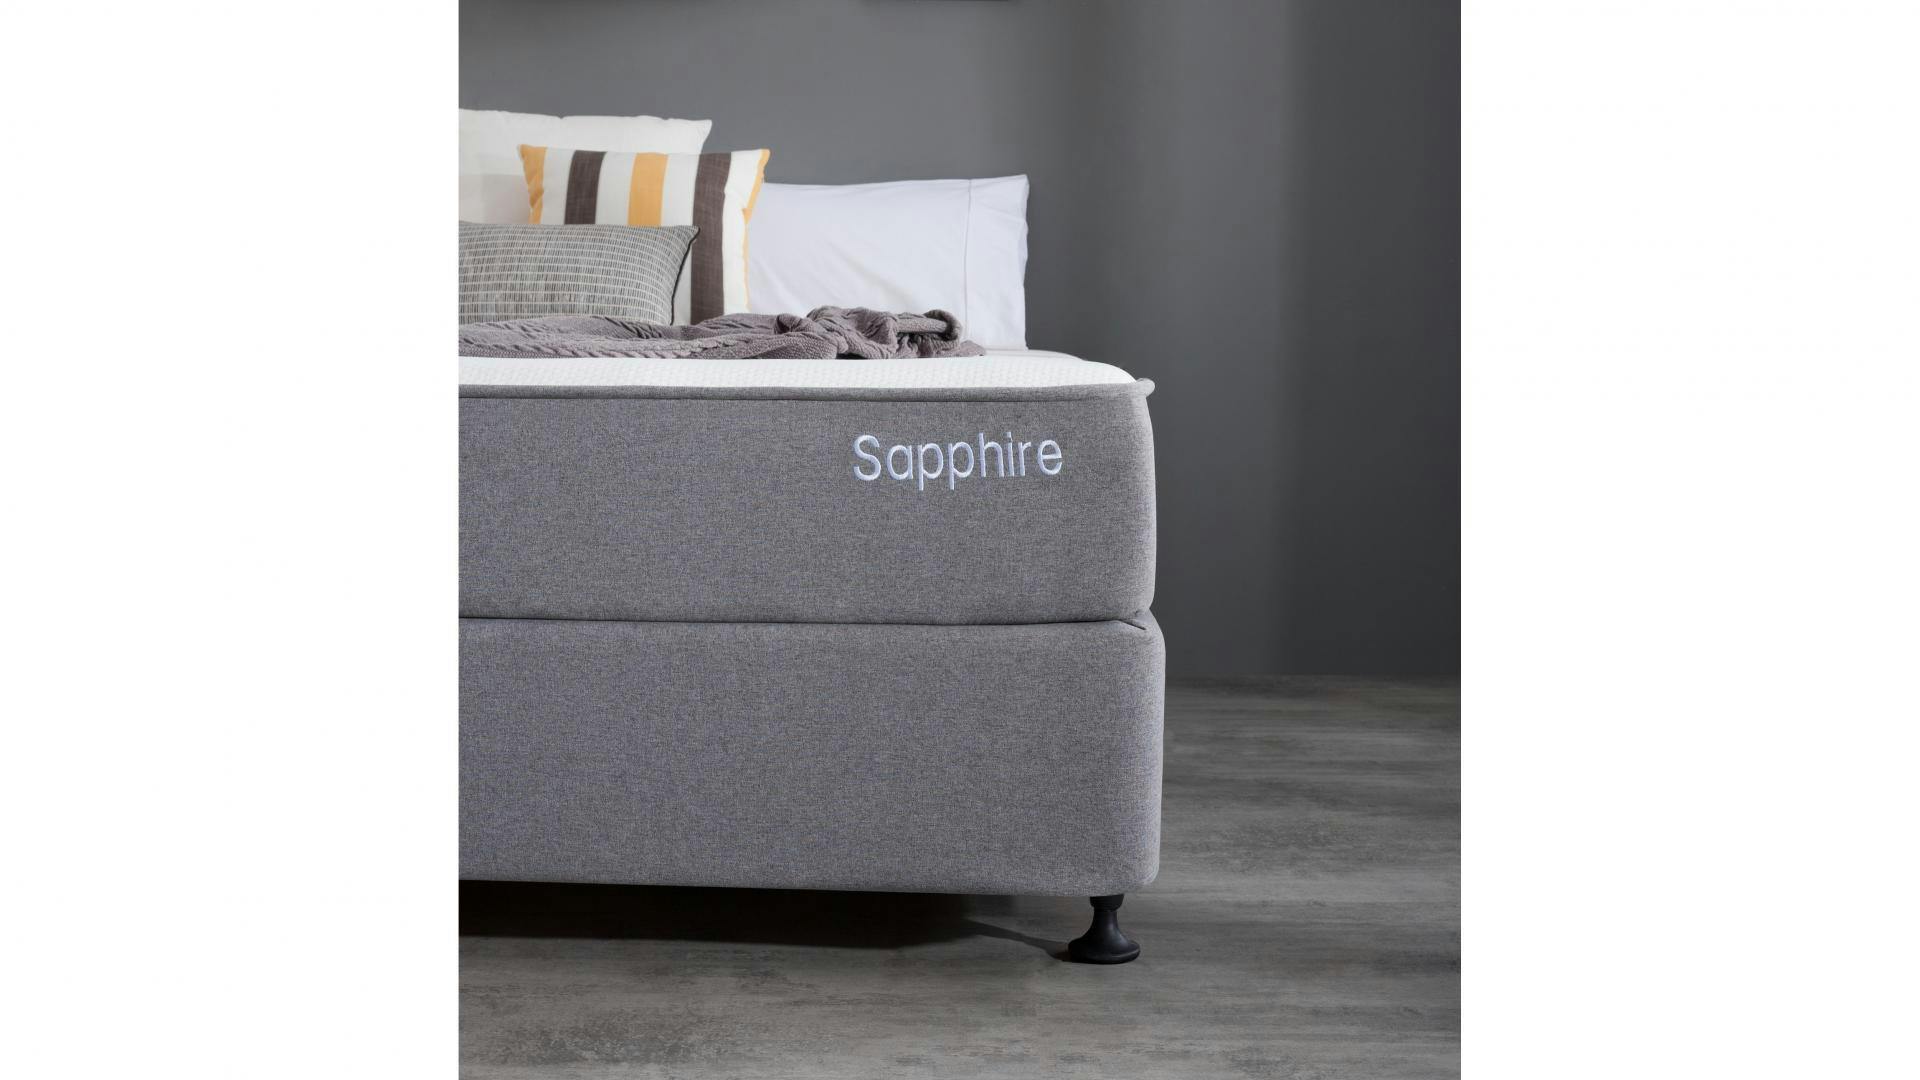 sapphire queen bed mattress